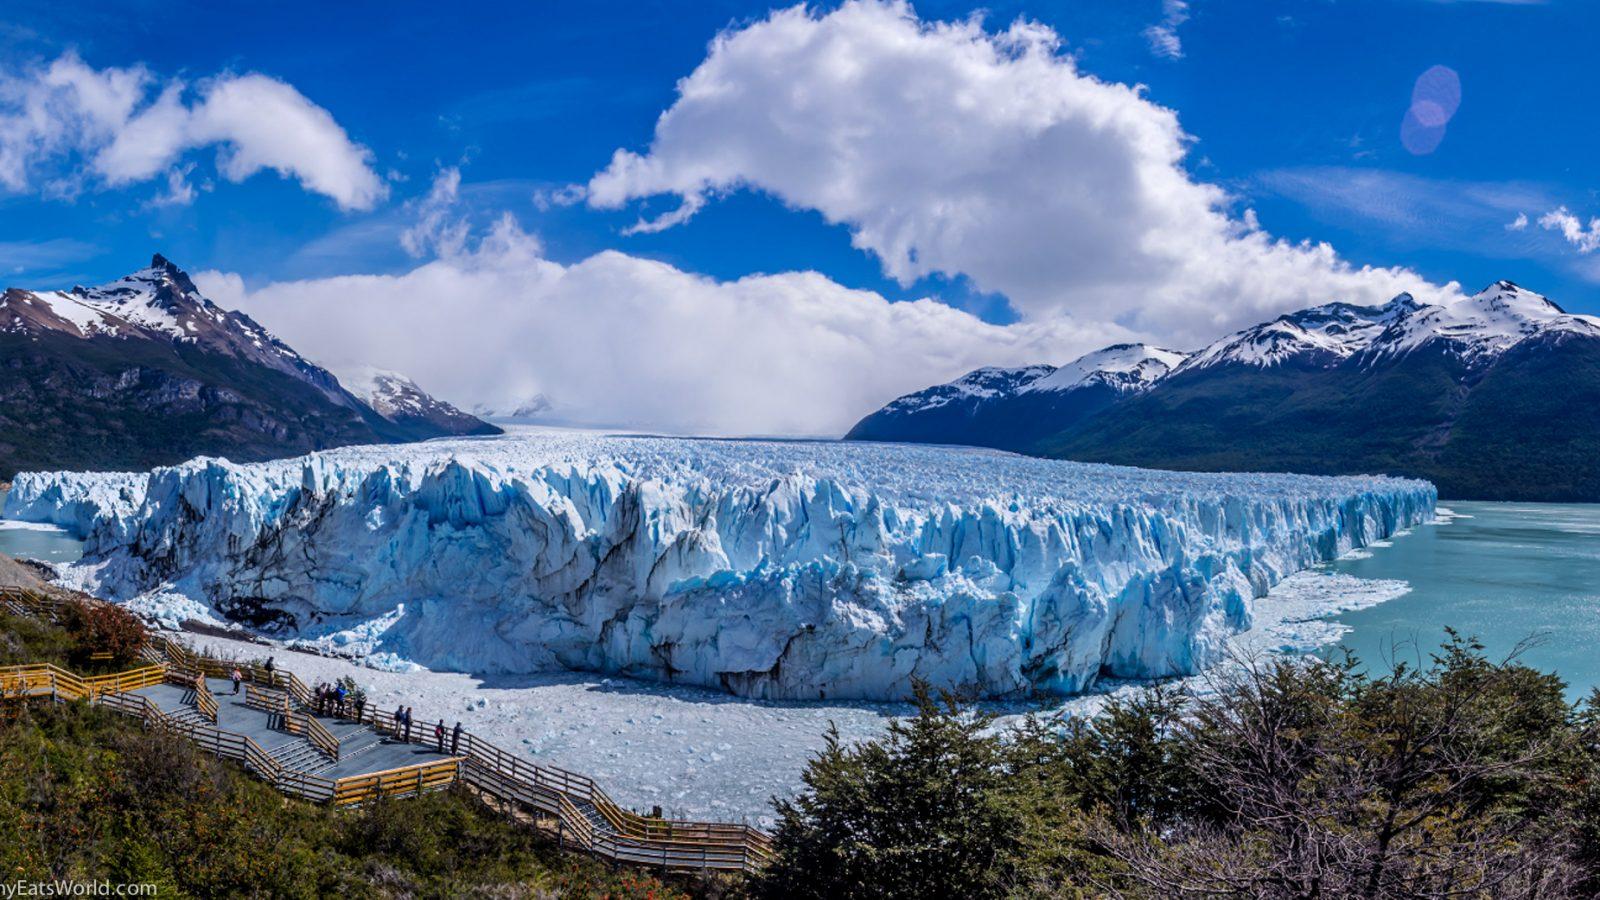 High Definition Wallpaper Of The Perito Moreno Glacier In Argentina